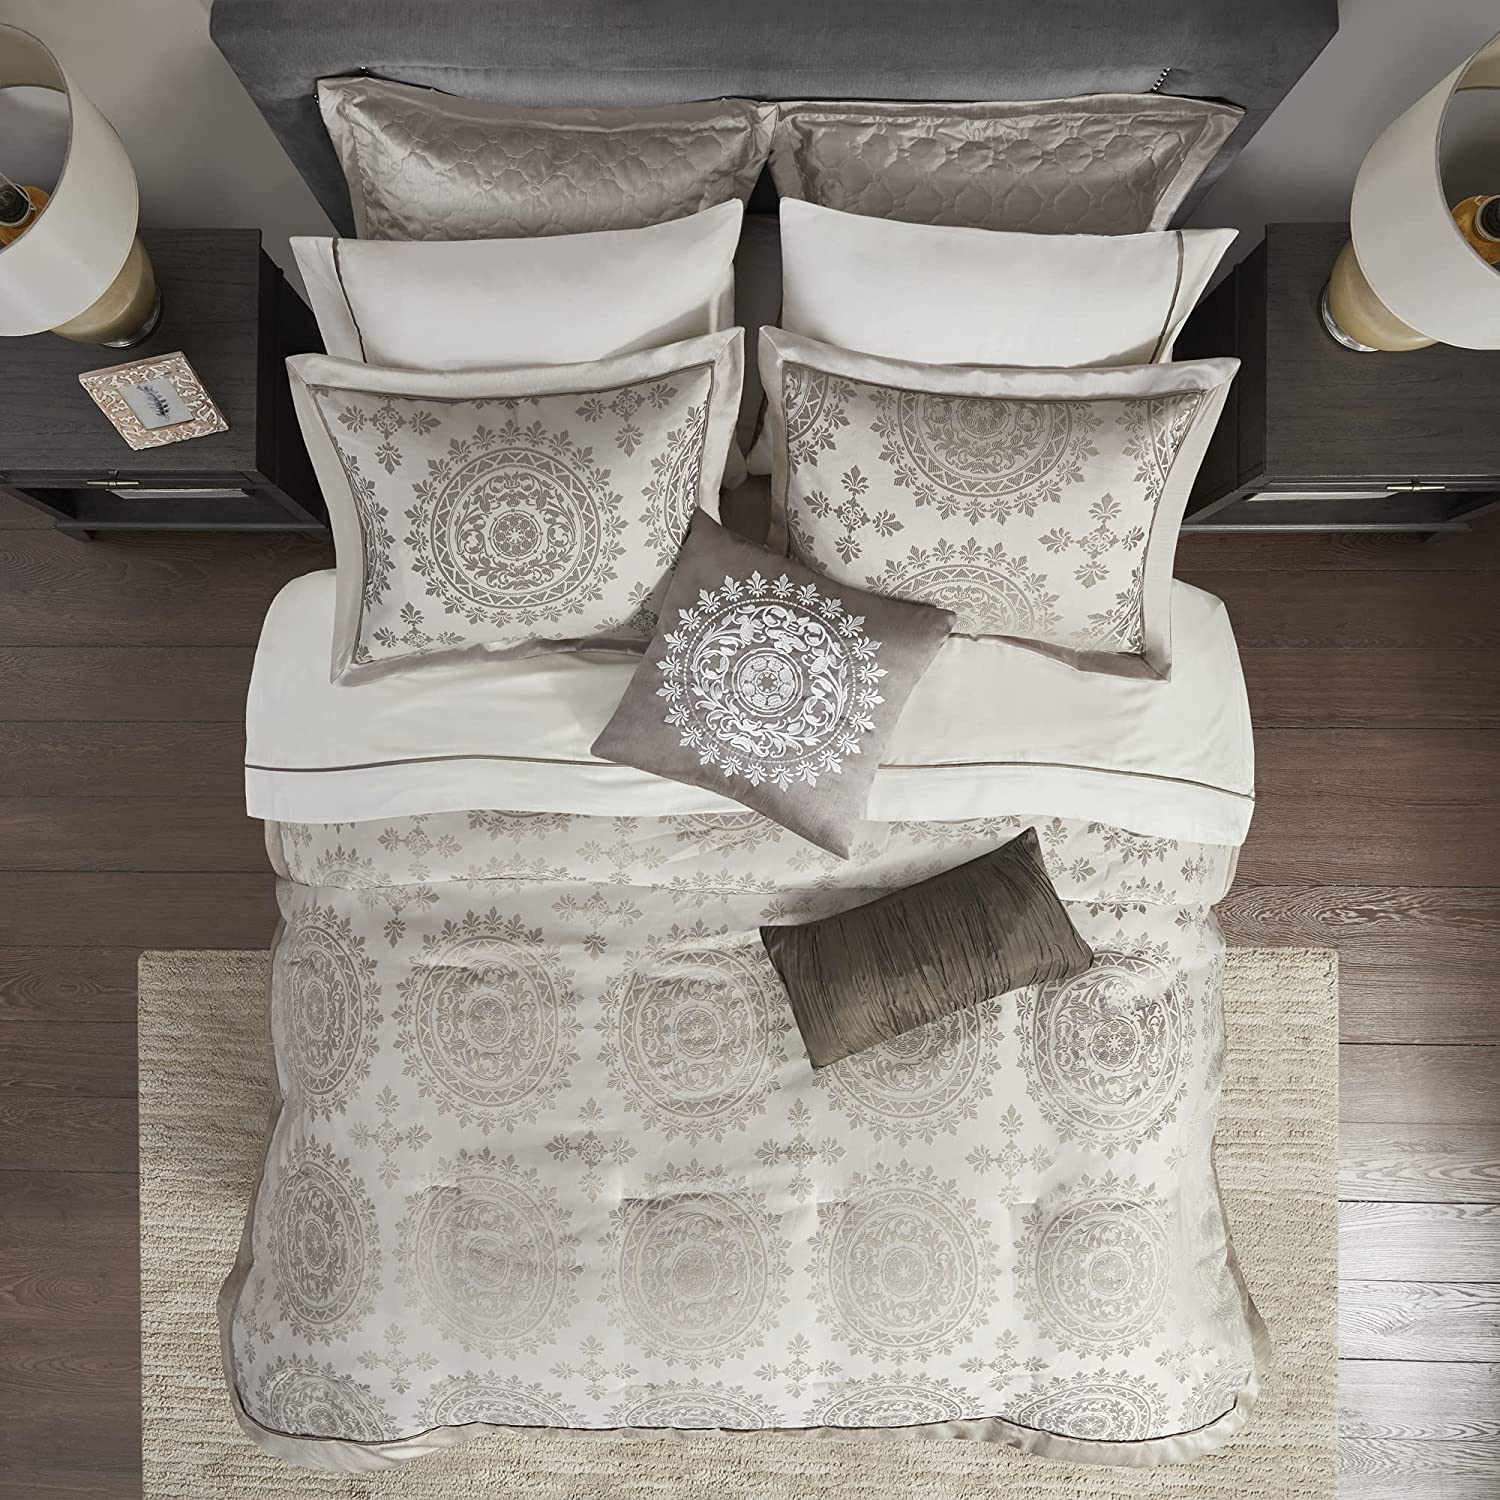 12 Piece Complete Bed Set1 Comforter:106x92 2 Dec Pillows:18x18/6.5x18 1 Fitted Sheet:78x80+14 1 Bedskirt:78x80+15 1 Flat Sheet:110x102 2 King Shams:20x36+2(2) 2 Euro Shams:26x26(2) 2 Pillowcases:20x40(2)TaupeMP10-119